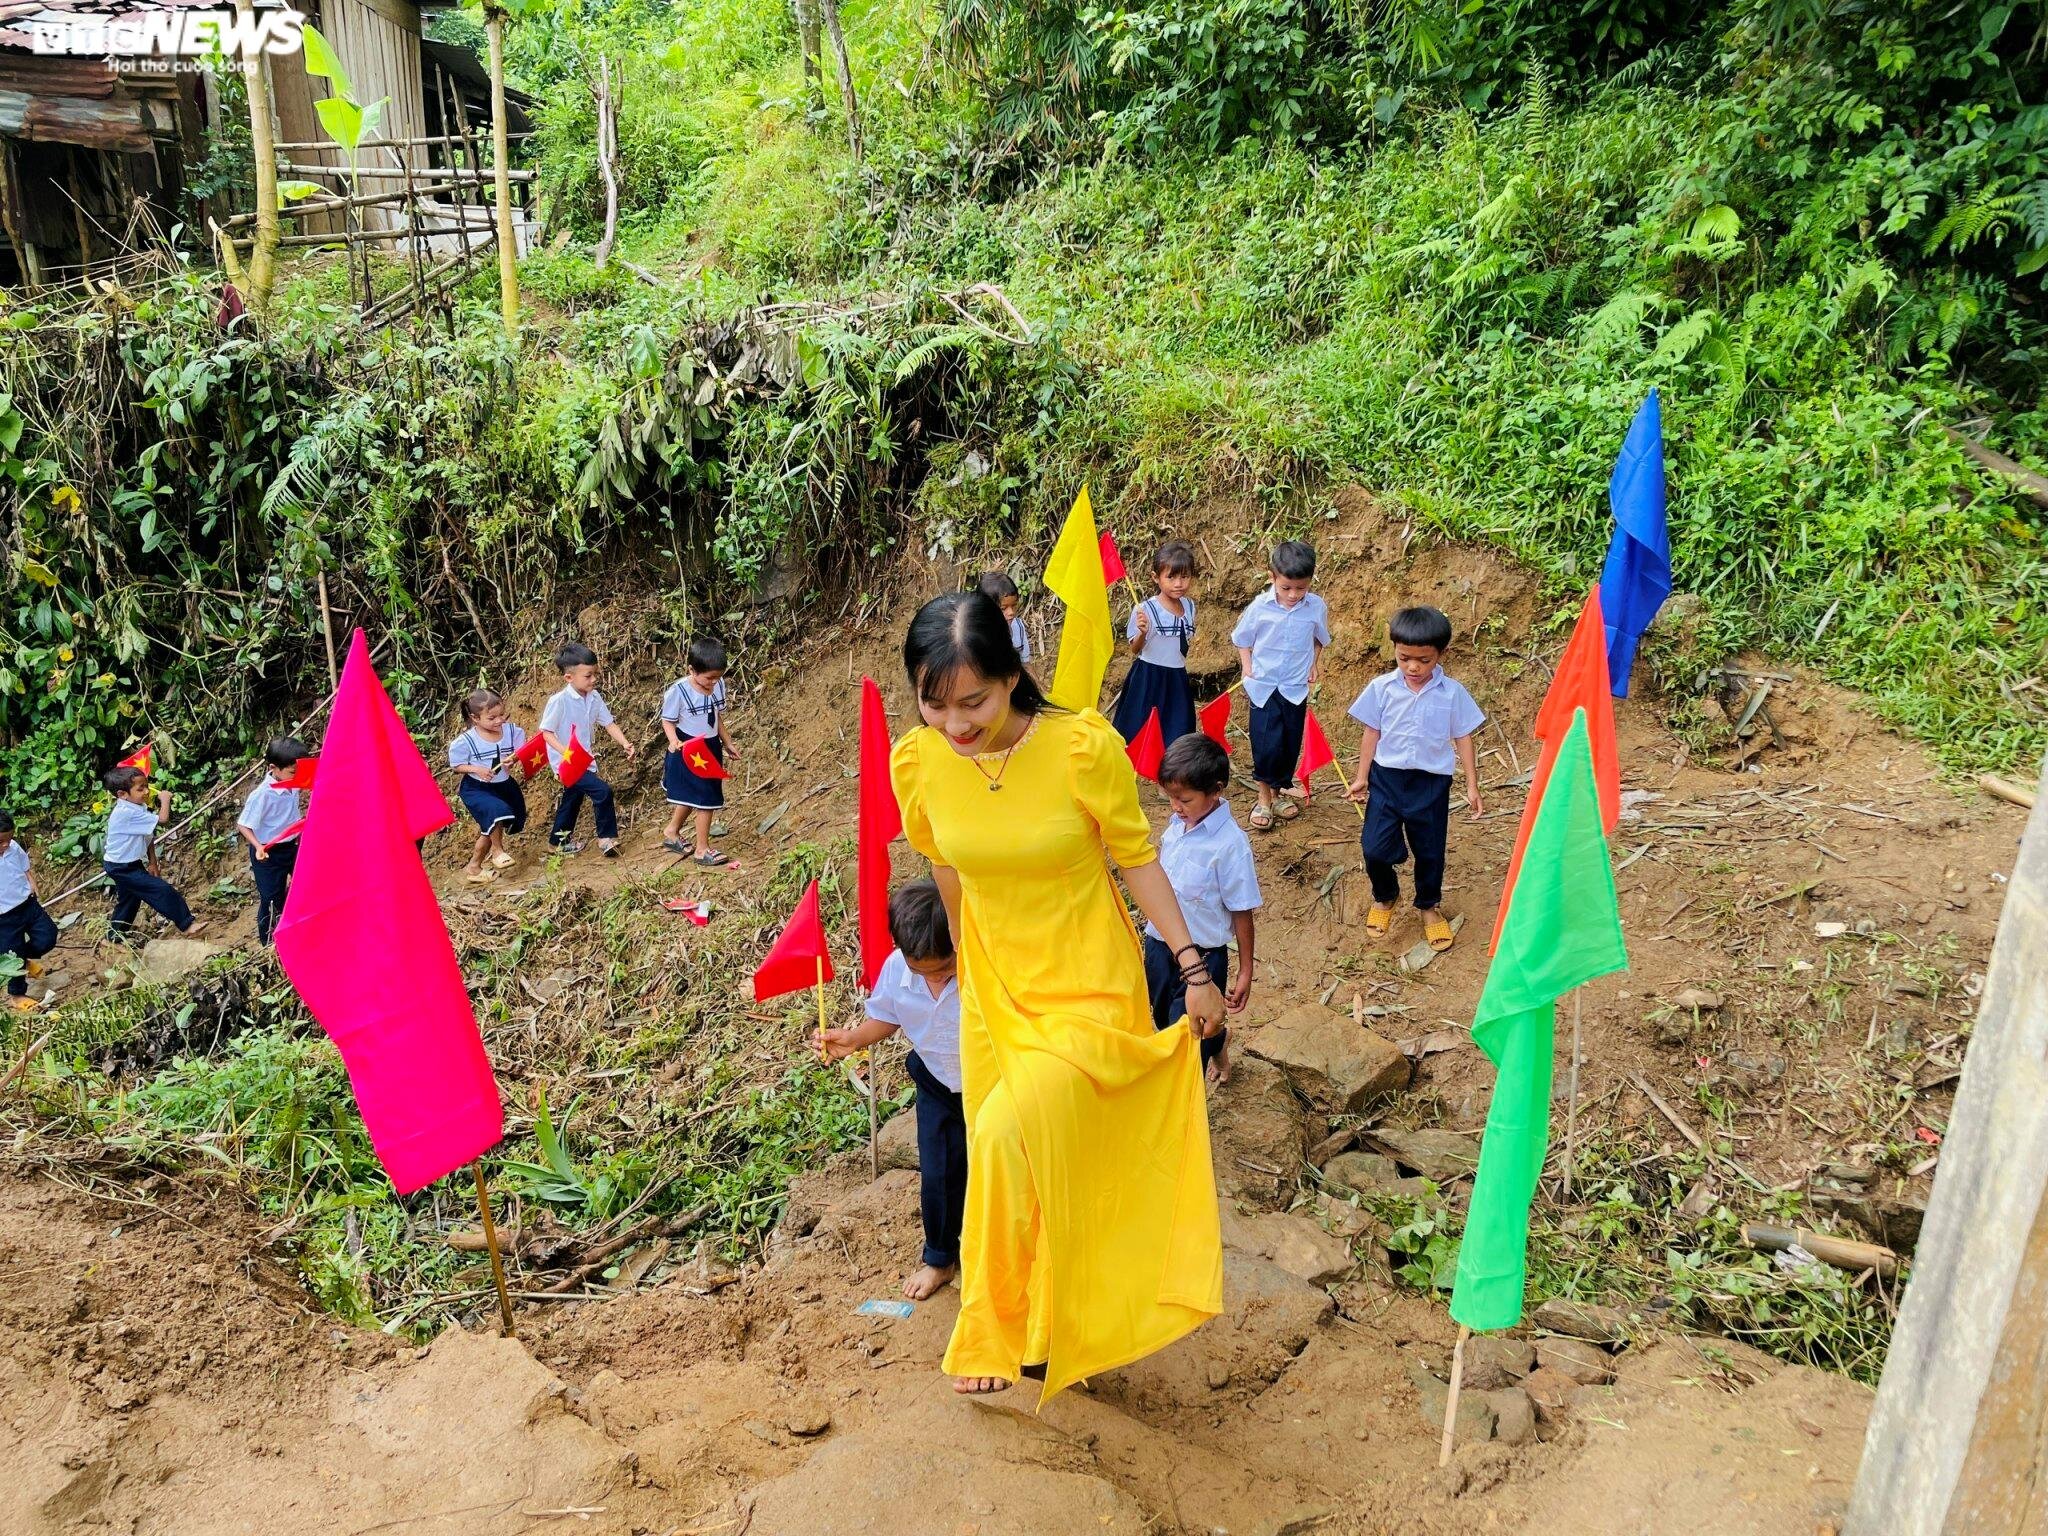 Theo cô Trà Thị Thu - giáo viên ở điểm trường Lăng Lương, do điều kiện cơ sở vật chất khó khăn nên điểm trường hiện nay chưa có trống để đánh. (Ảnh: Trà Thu)